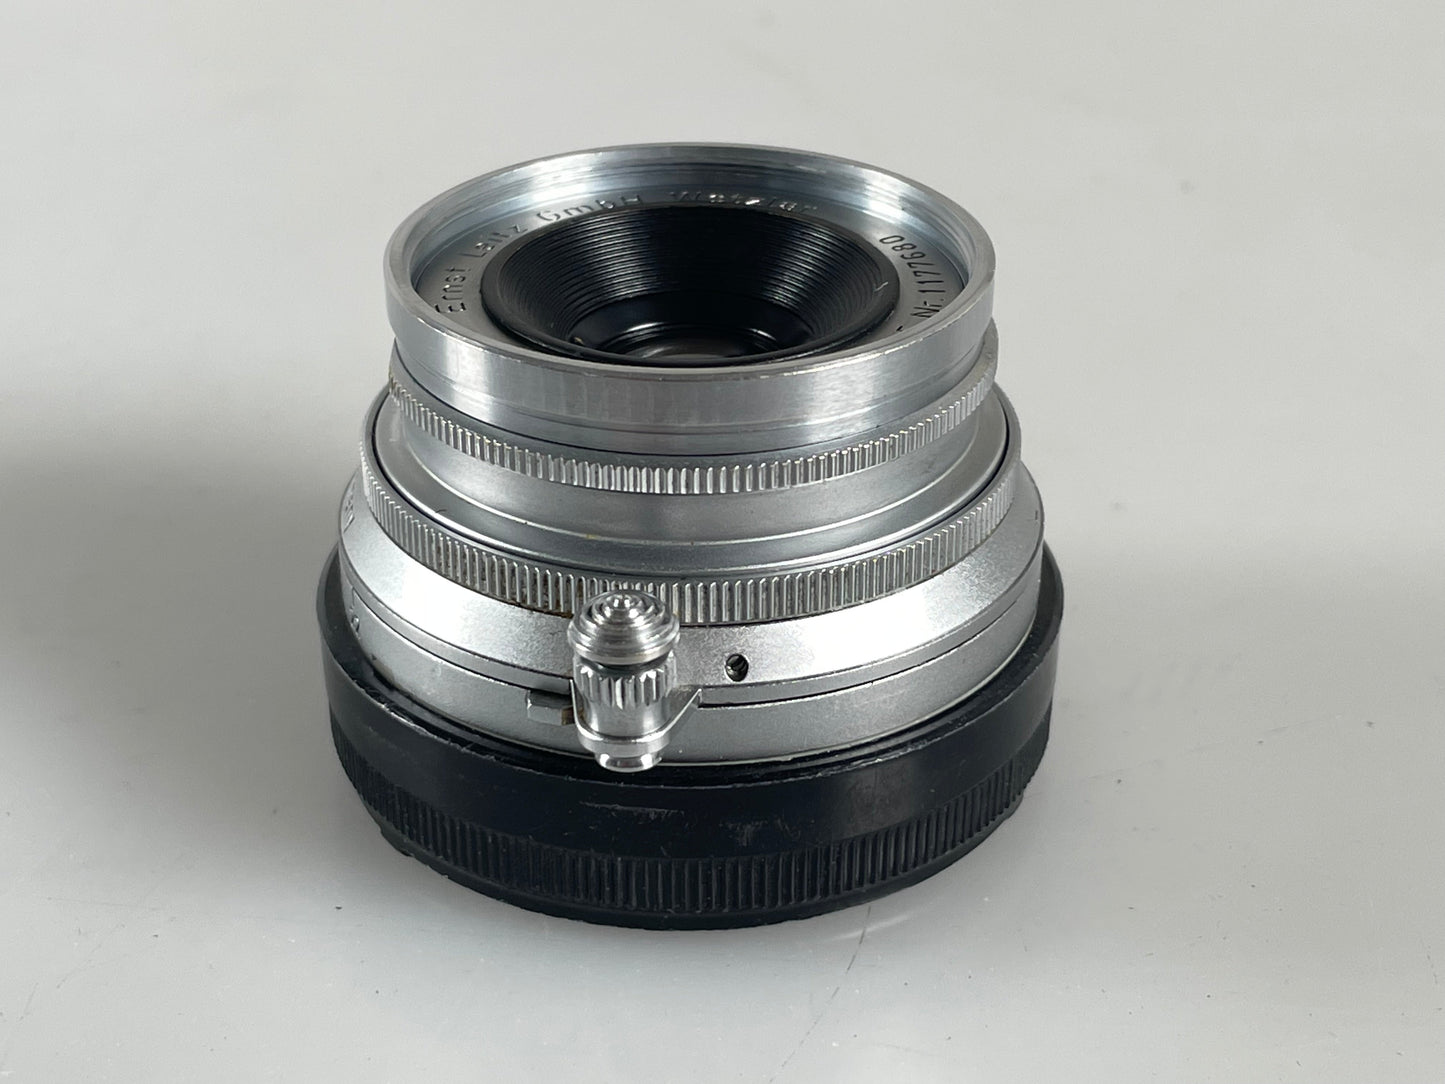 Leica 35mm f3.5 Summaron M mount 3.5cm lens